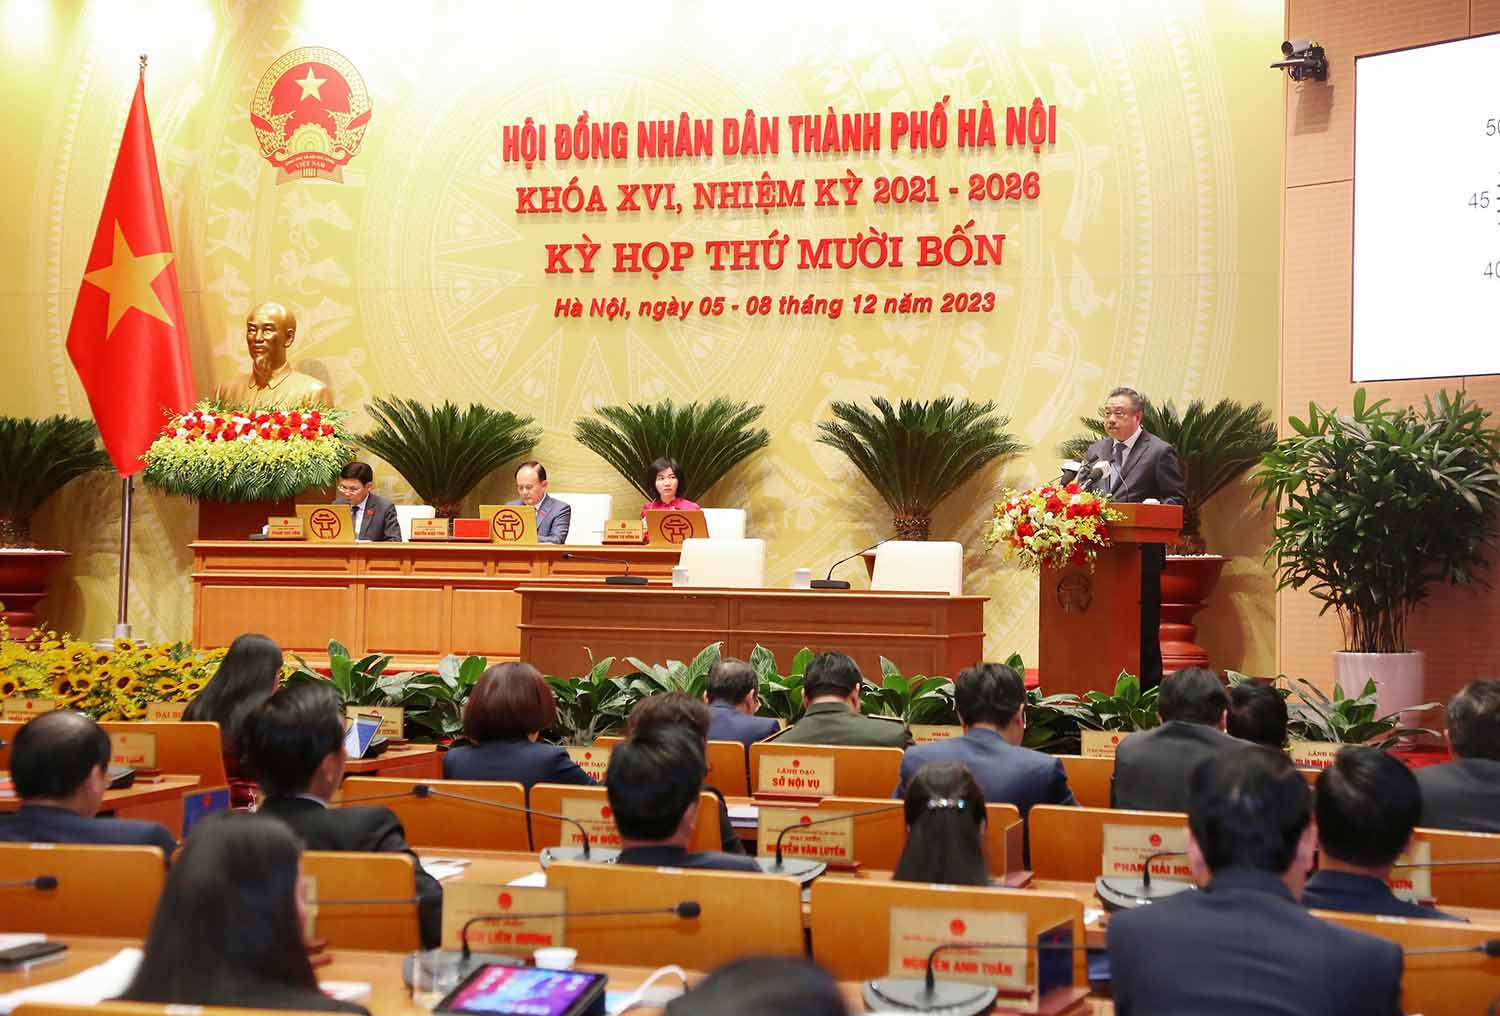 Toàn cảnh phiên họp của HDND TP Hà Nội. Ảnh: Phạm Đông